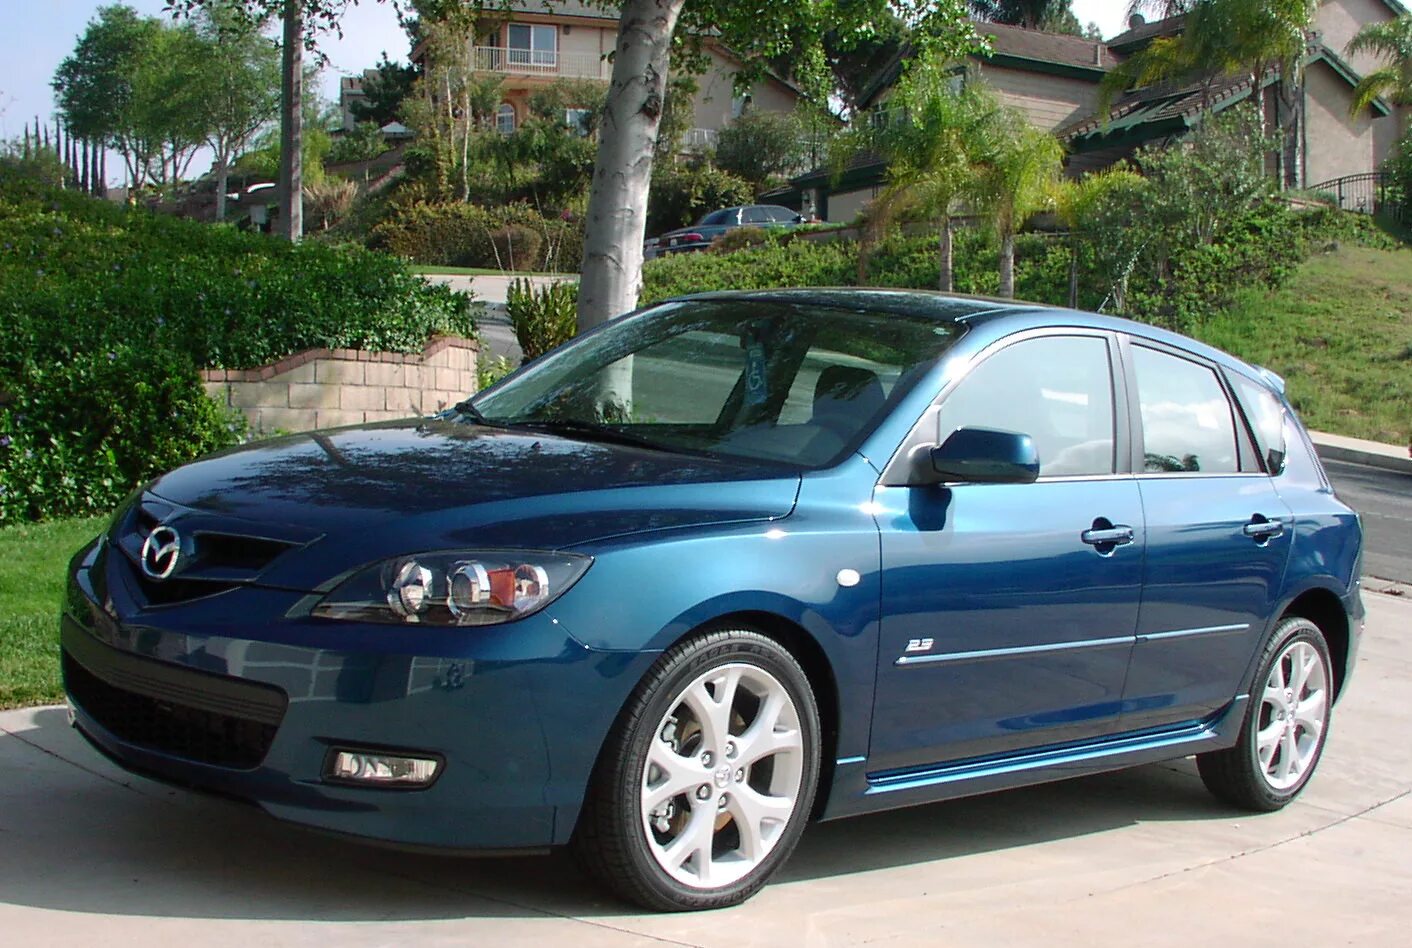 Мазда 3 хэтчбек 1.6. Mazda 3 2007. Mazda 3 Hatchback 2007. Мазда 3 2007 хэтчбек 1.6. Мазда 3 седан 2007.